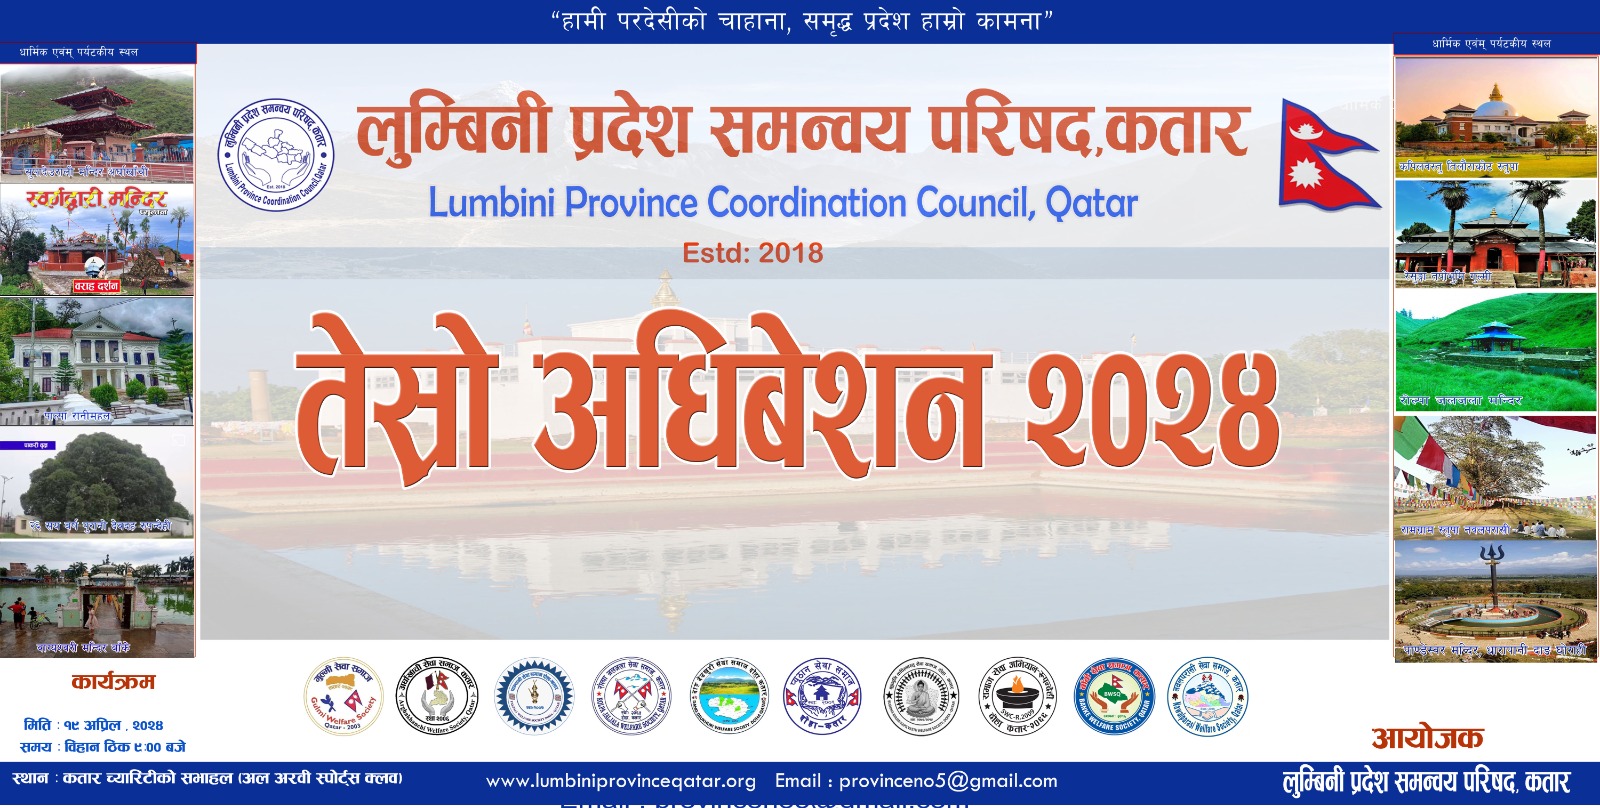 लुम्बिनी प्रदेश समन्वय परिषद कतारको तेश्रो अधिबेशन हुदै